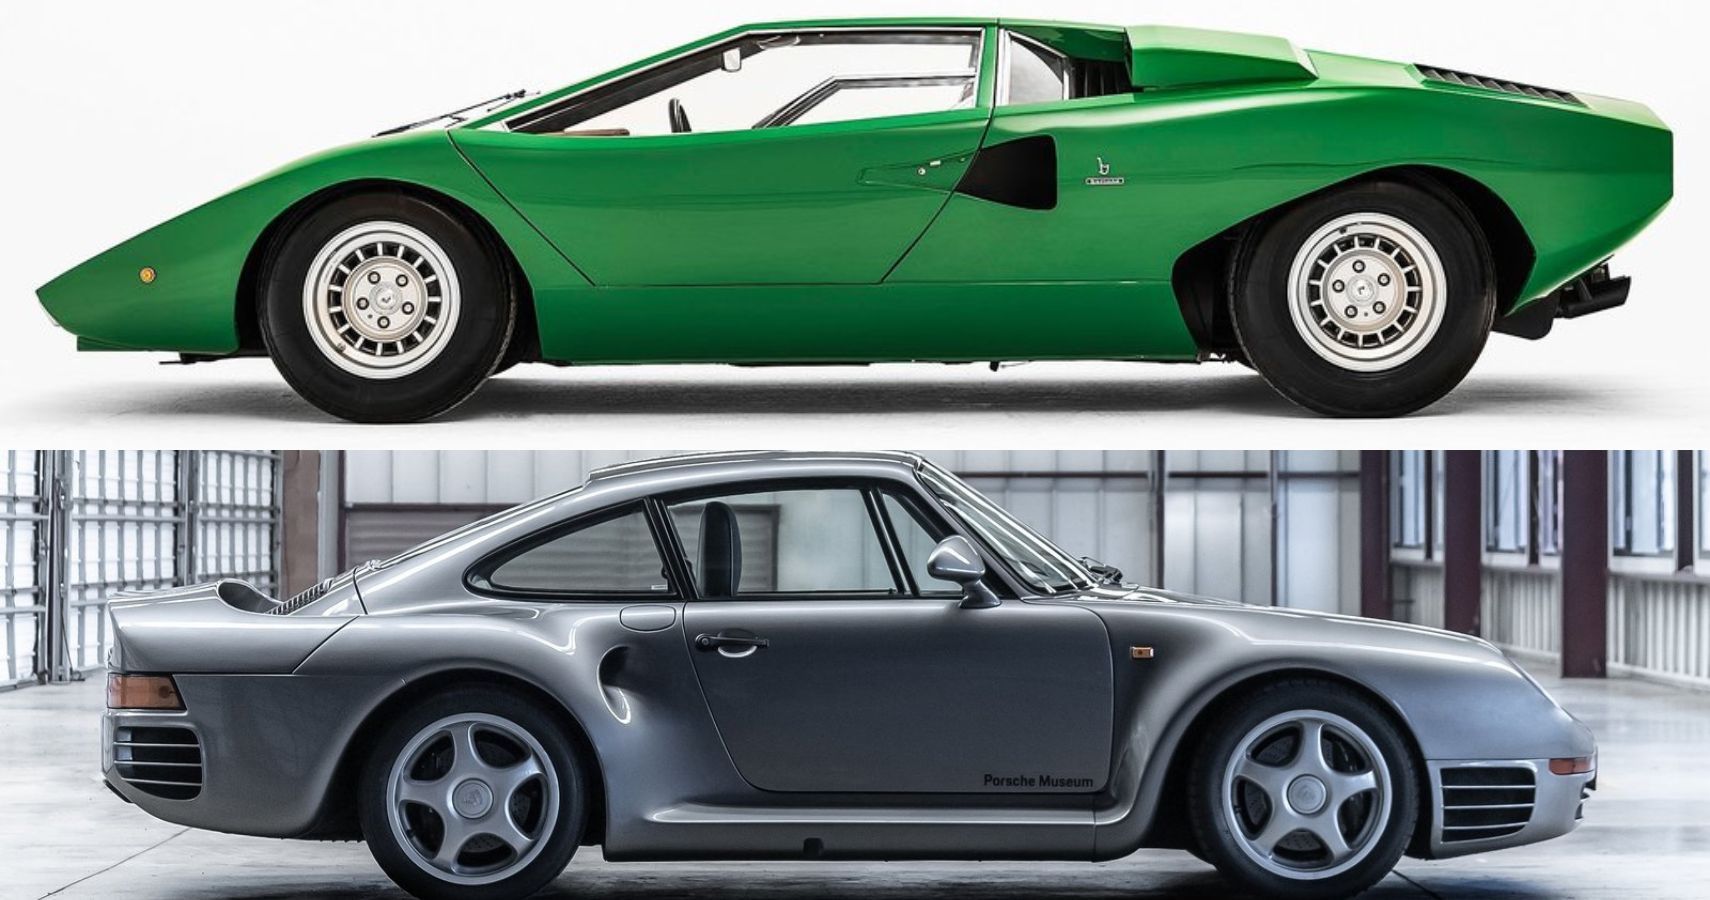 Lamborghini Countach and Porsche 959 side view comparison